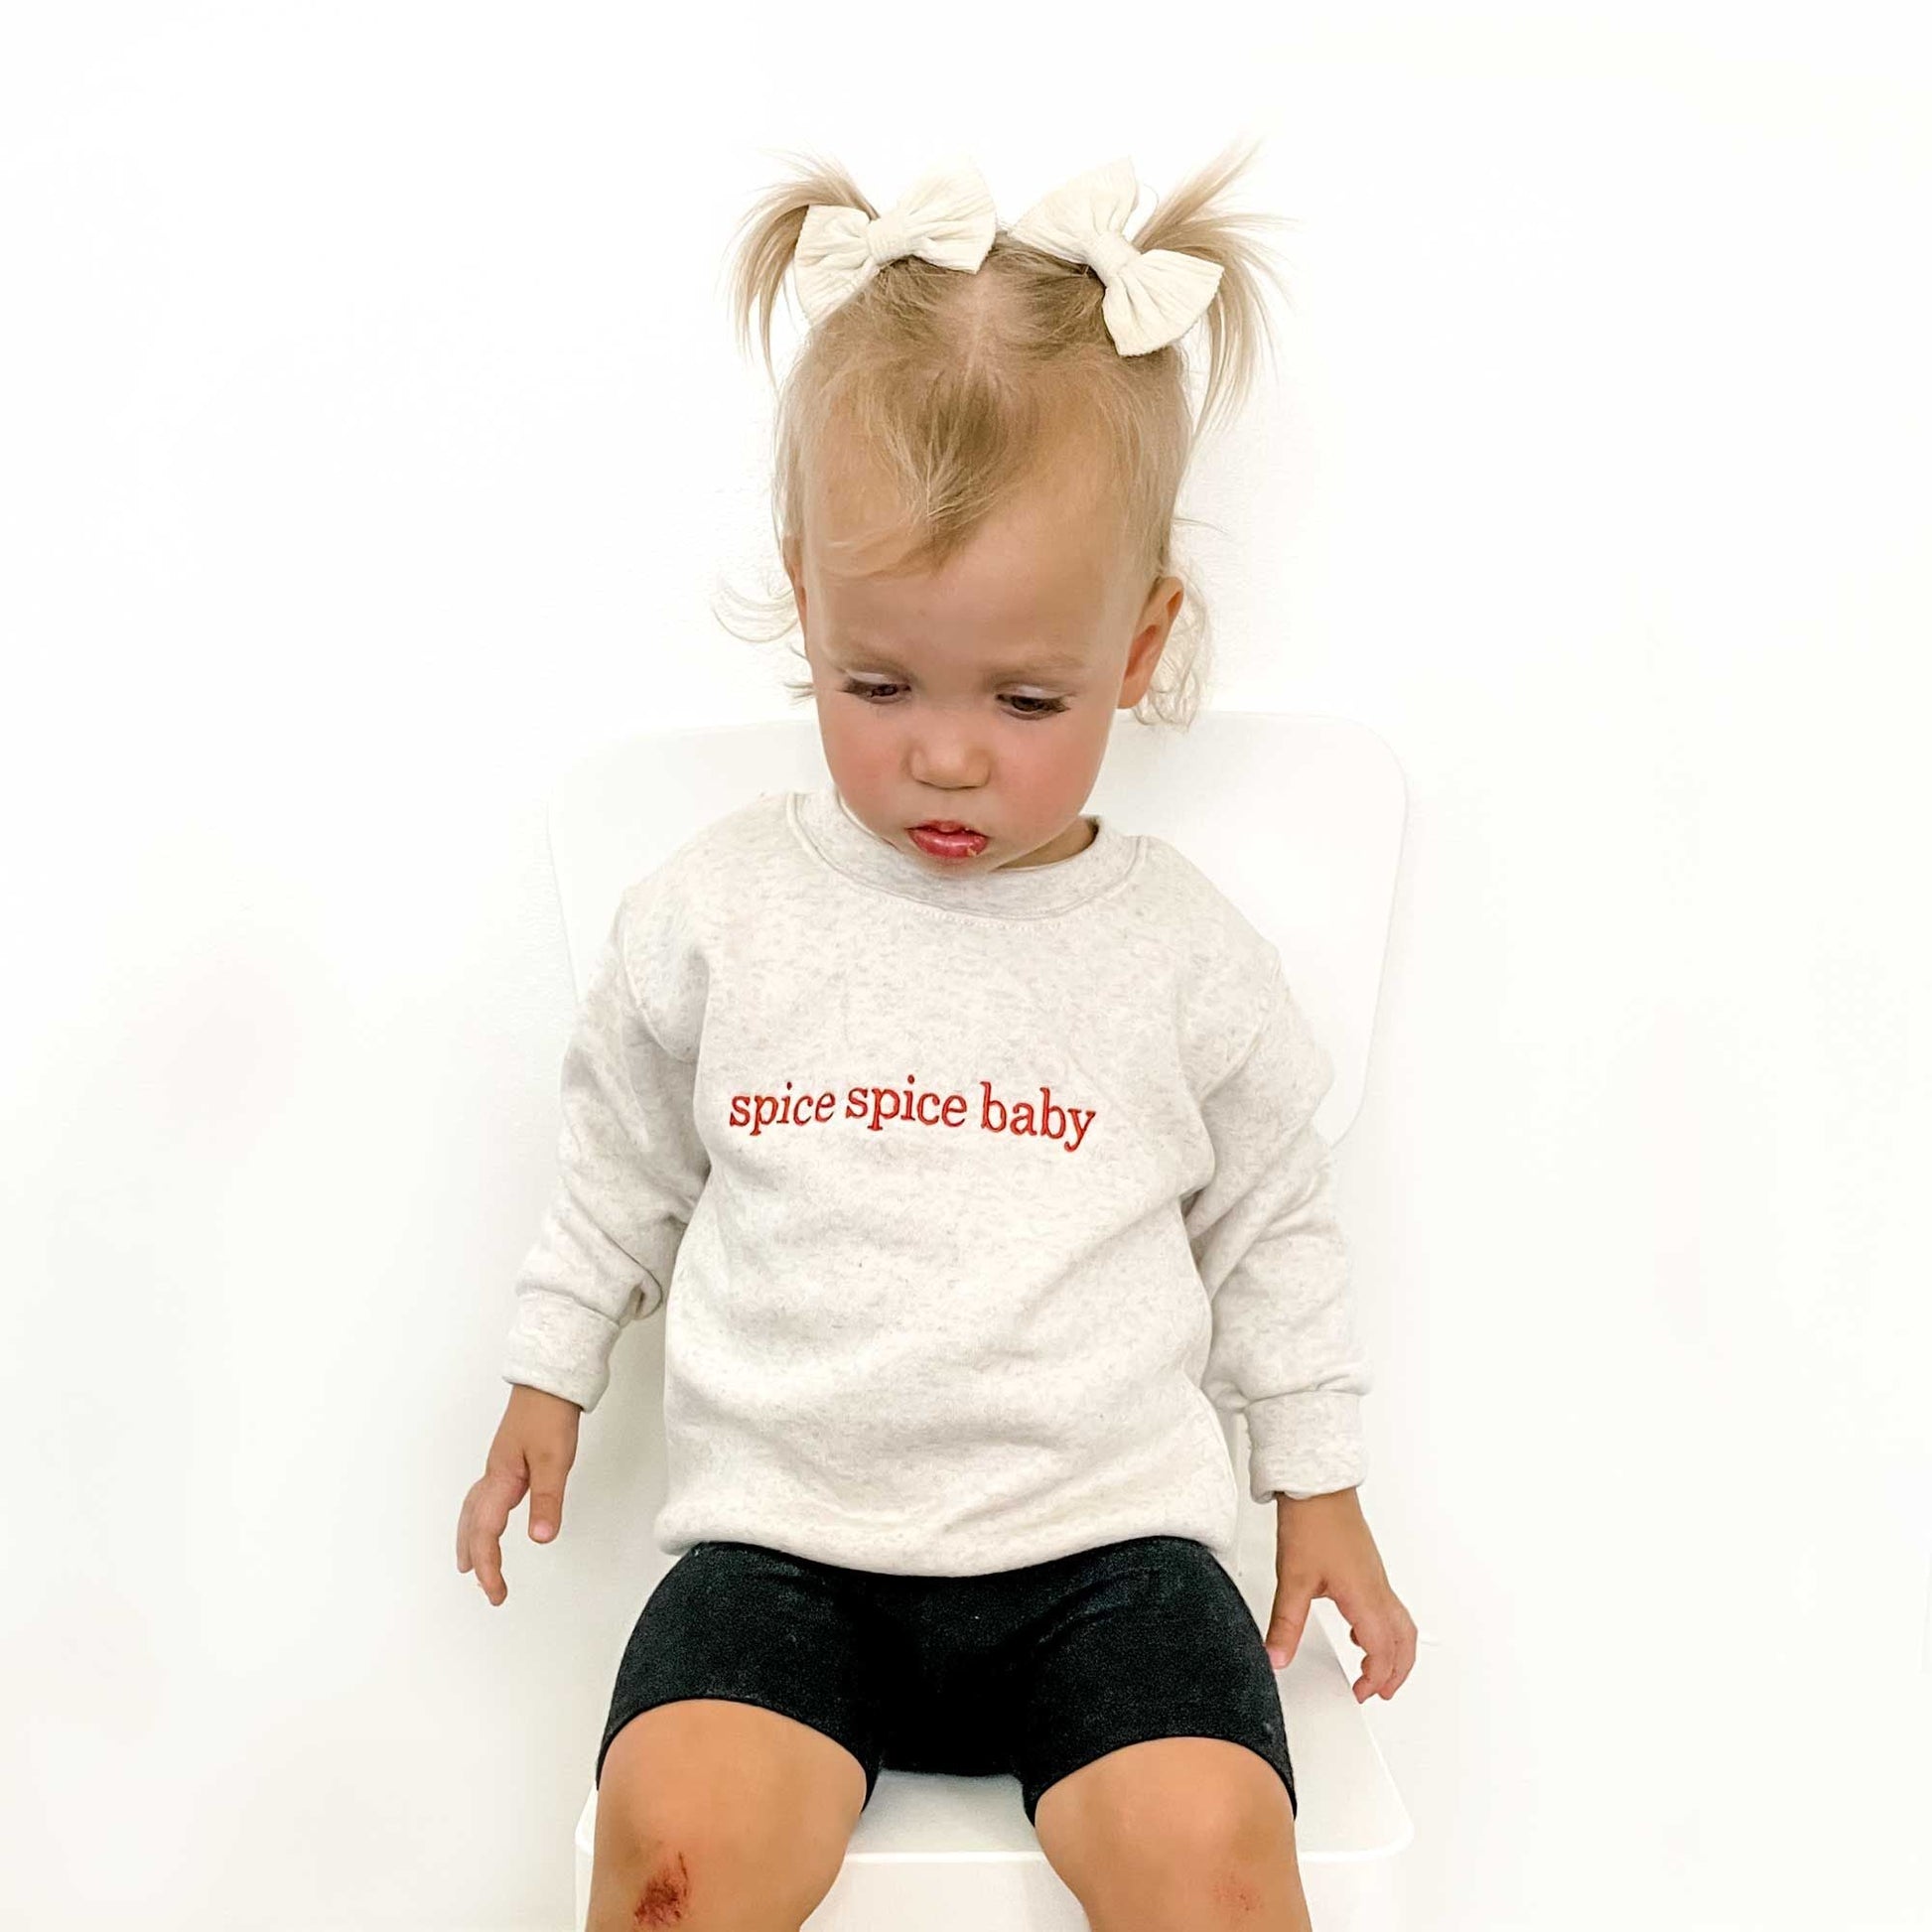 Toddler Spice Spice Baby Sweatshirt